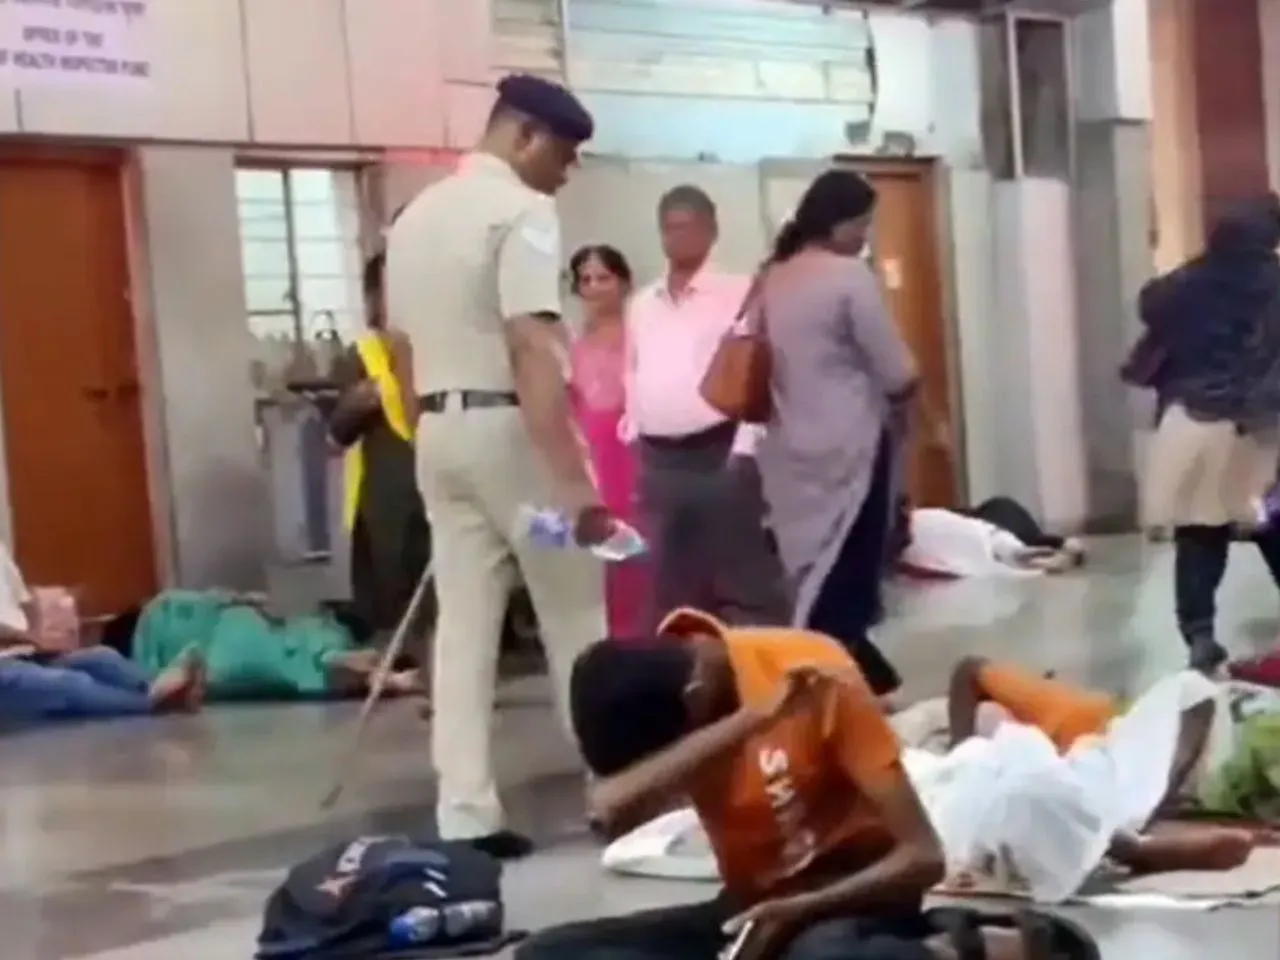 Officer Splashes Water On People Sleeping At Platform, Faces Rebuke